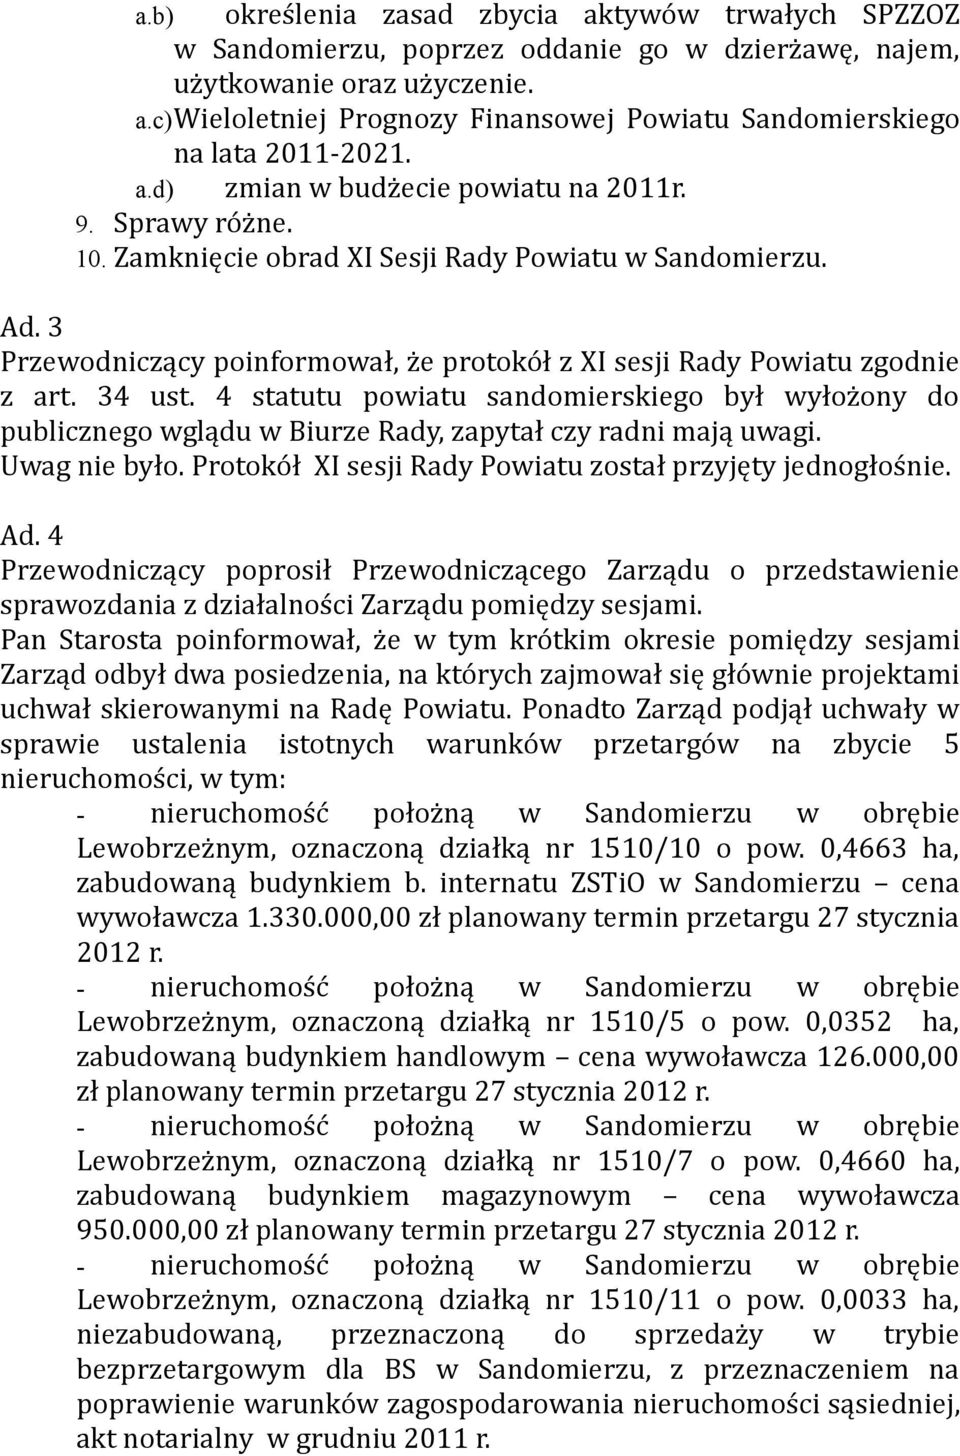 34 ust. 4 statutu powiatu sandomierskiego był wyłożony do publicznego wglądu w Biurze Rady, zapytał czy radni mają uwagi. Uwag nie było. Protokół XI sesji Rady Powiatu został przyjęty jednogłośnie.